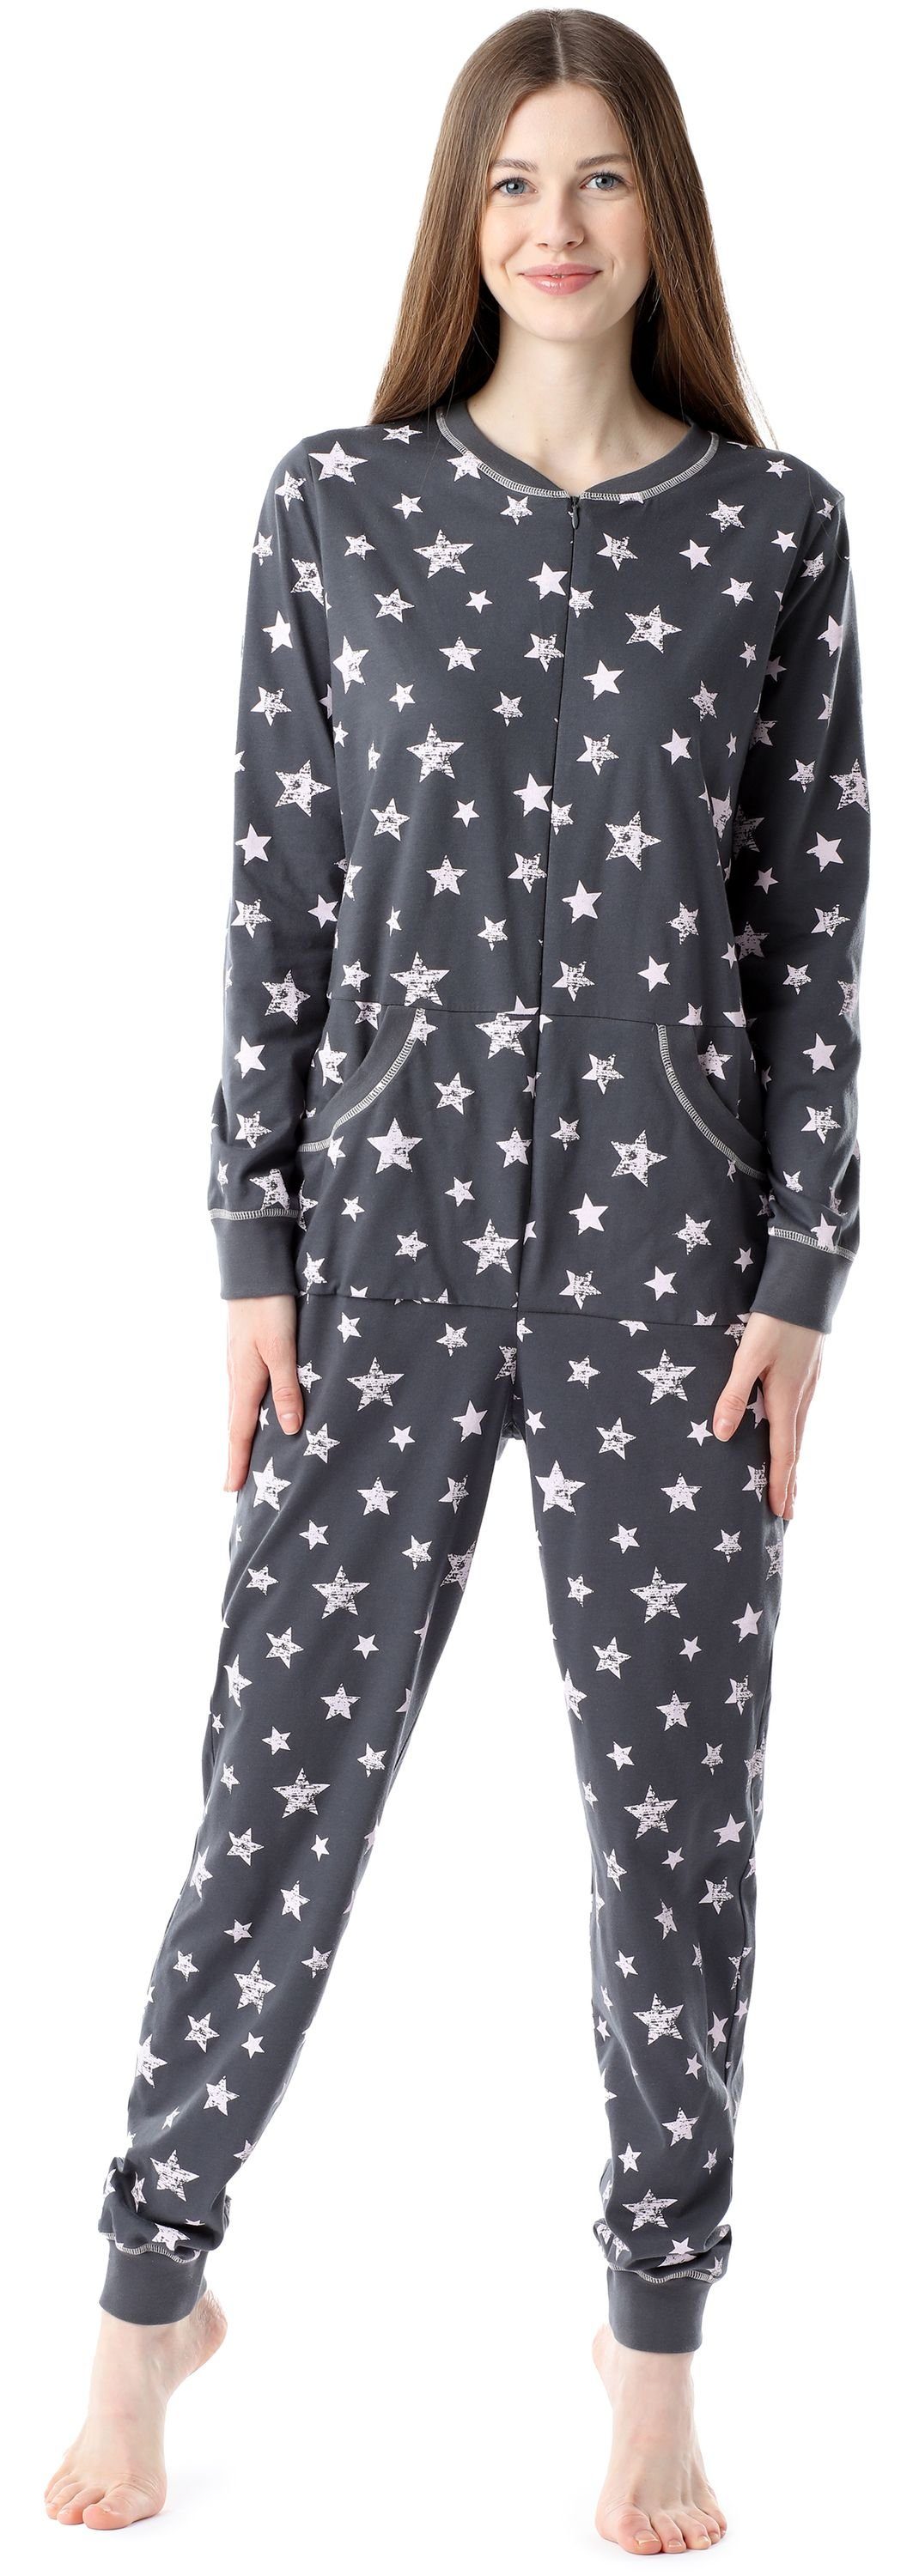 Bellivalini Pyjama Damen Schlafanzug Schlafoverall BLV50-206 Graphite/Rosa Sterne